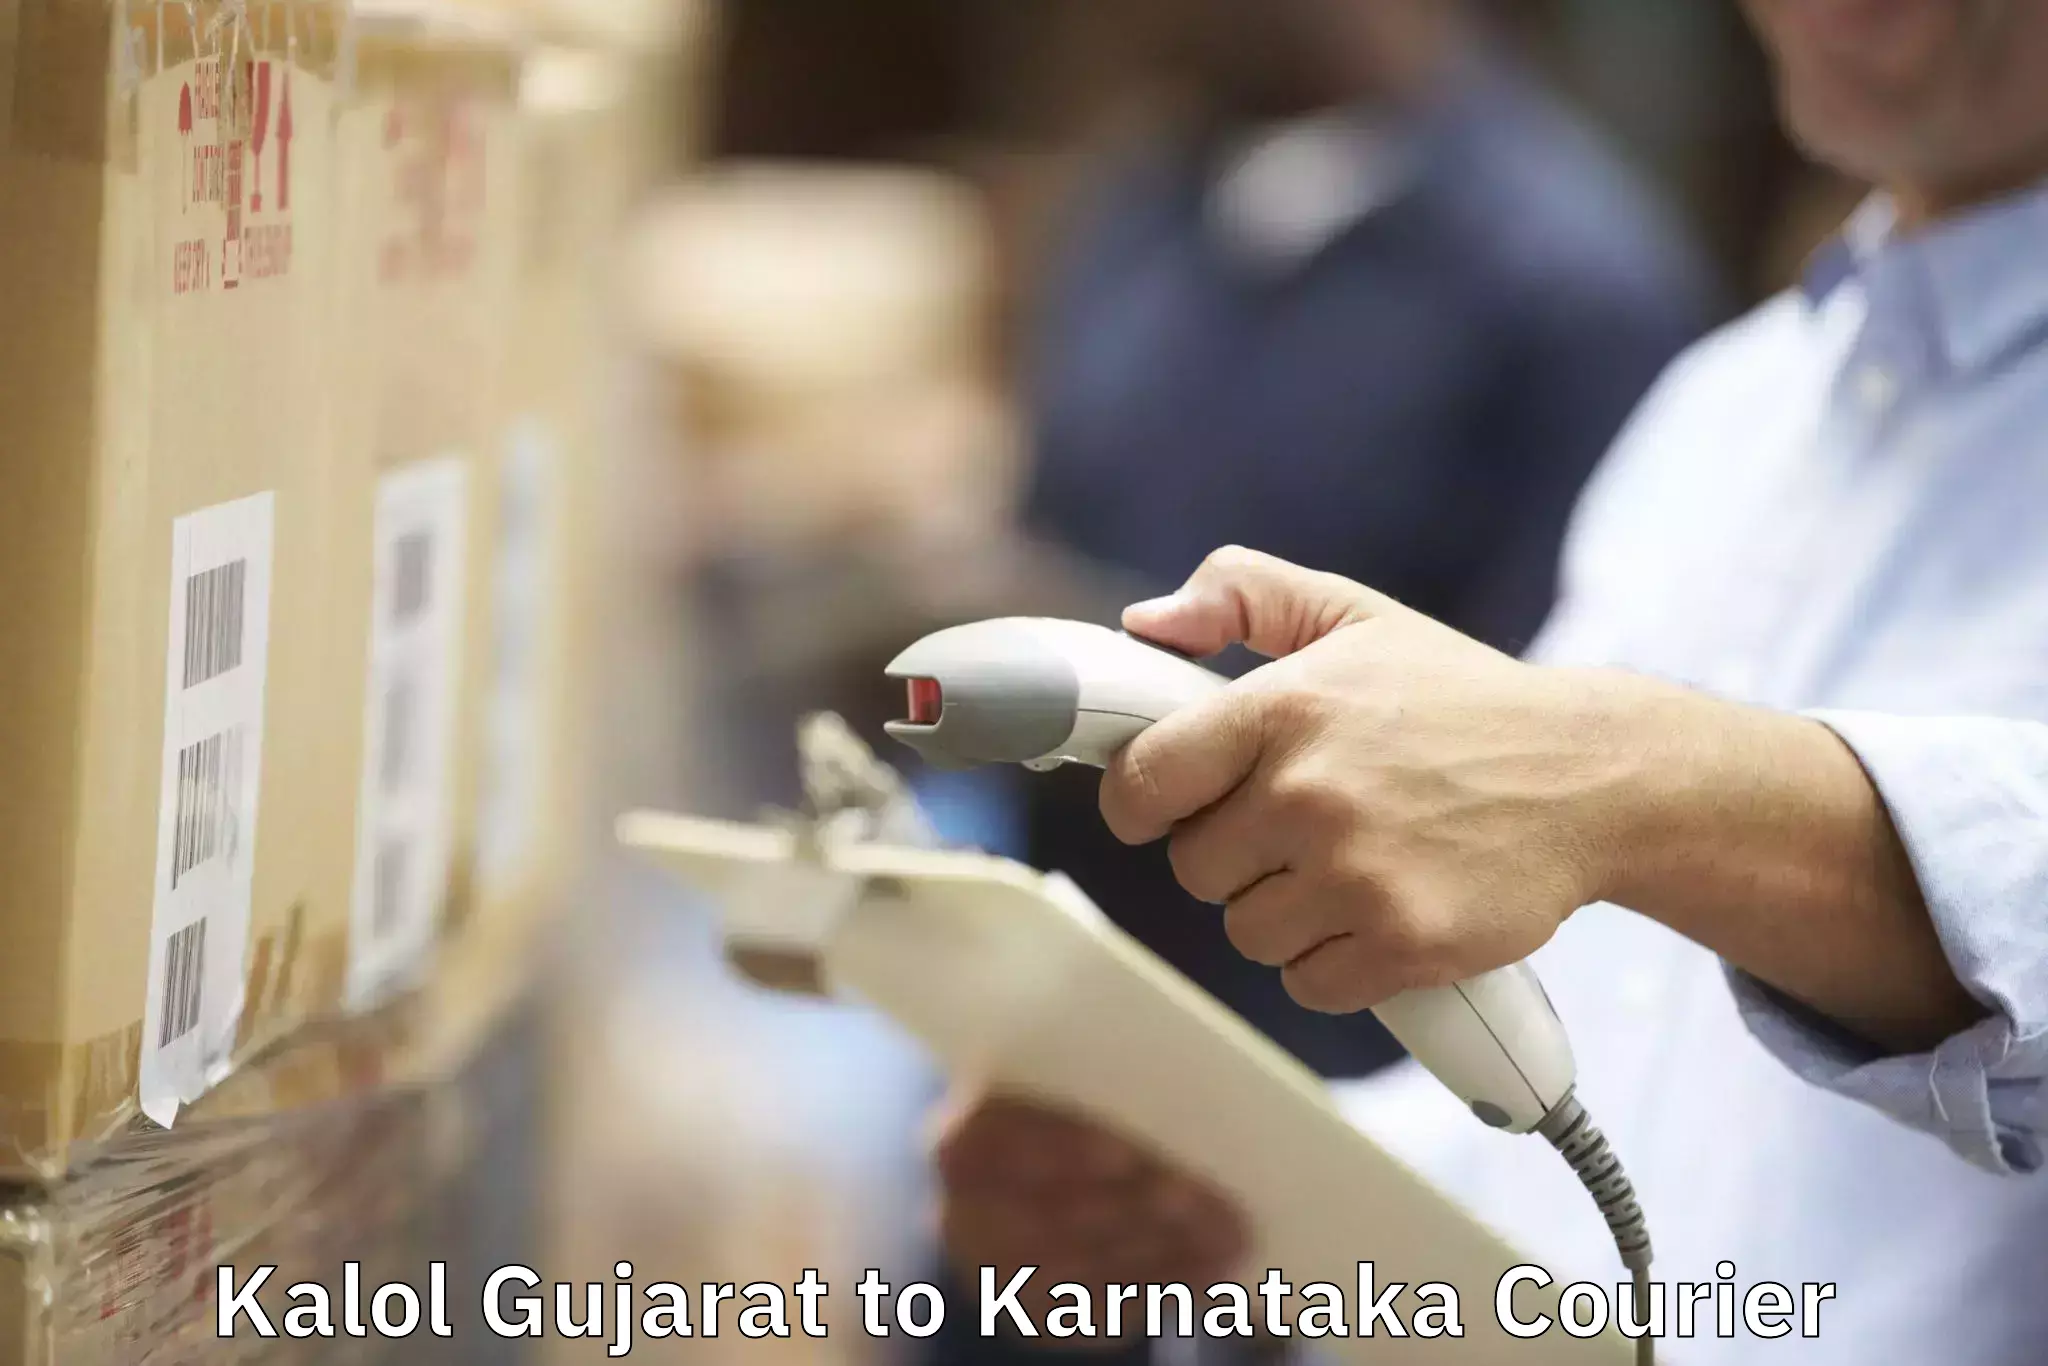 Furniture moving experts Kalol Gujarat to Ramanathapura